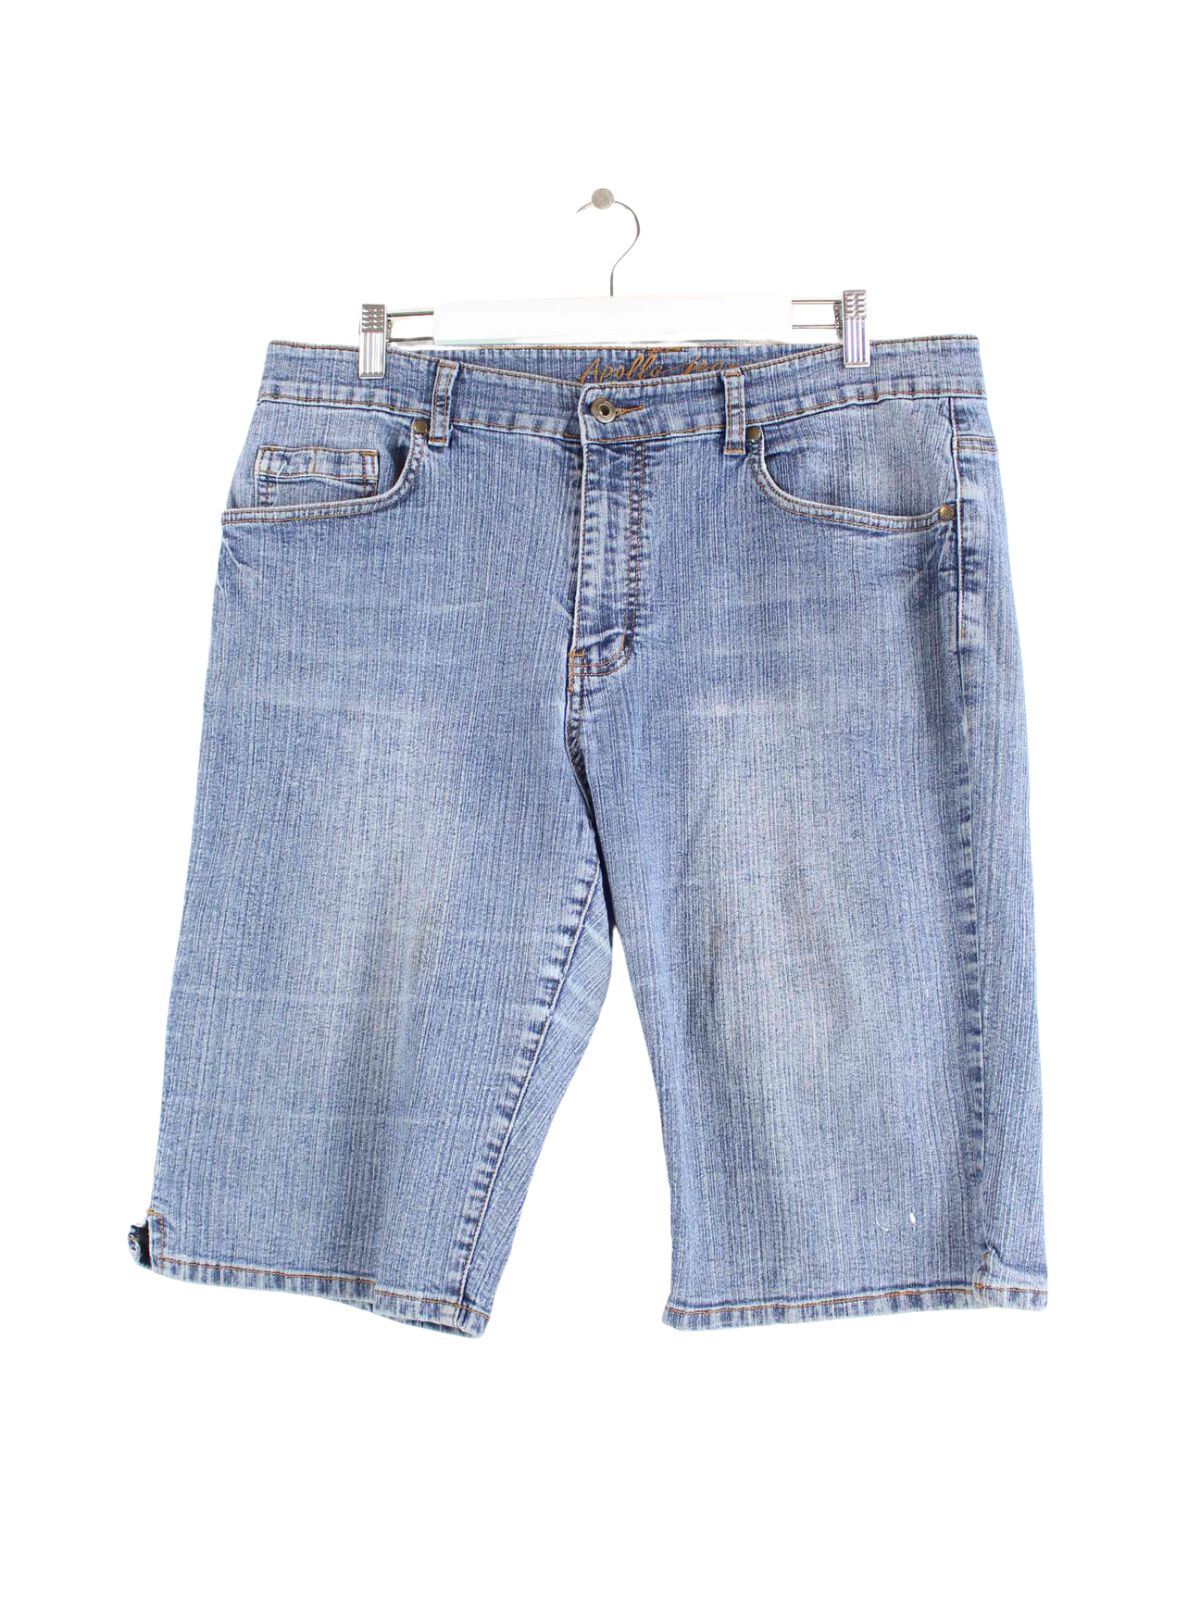 Vintage Jeans Shorts Blau W36 (front image)